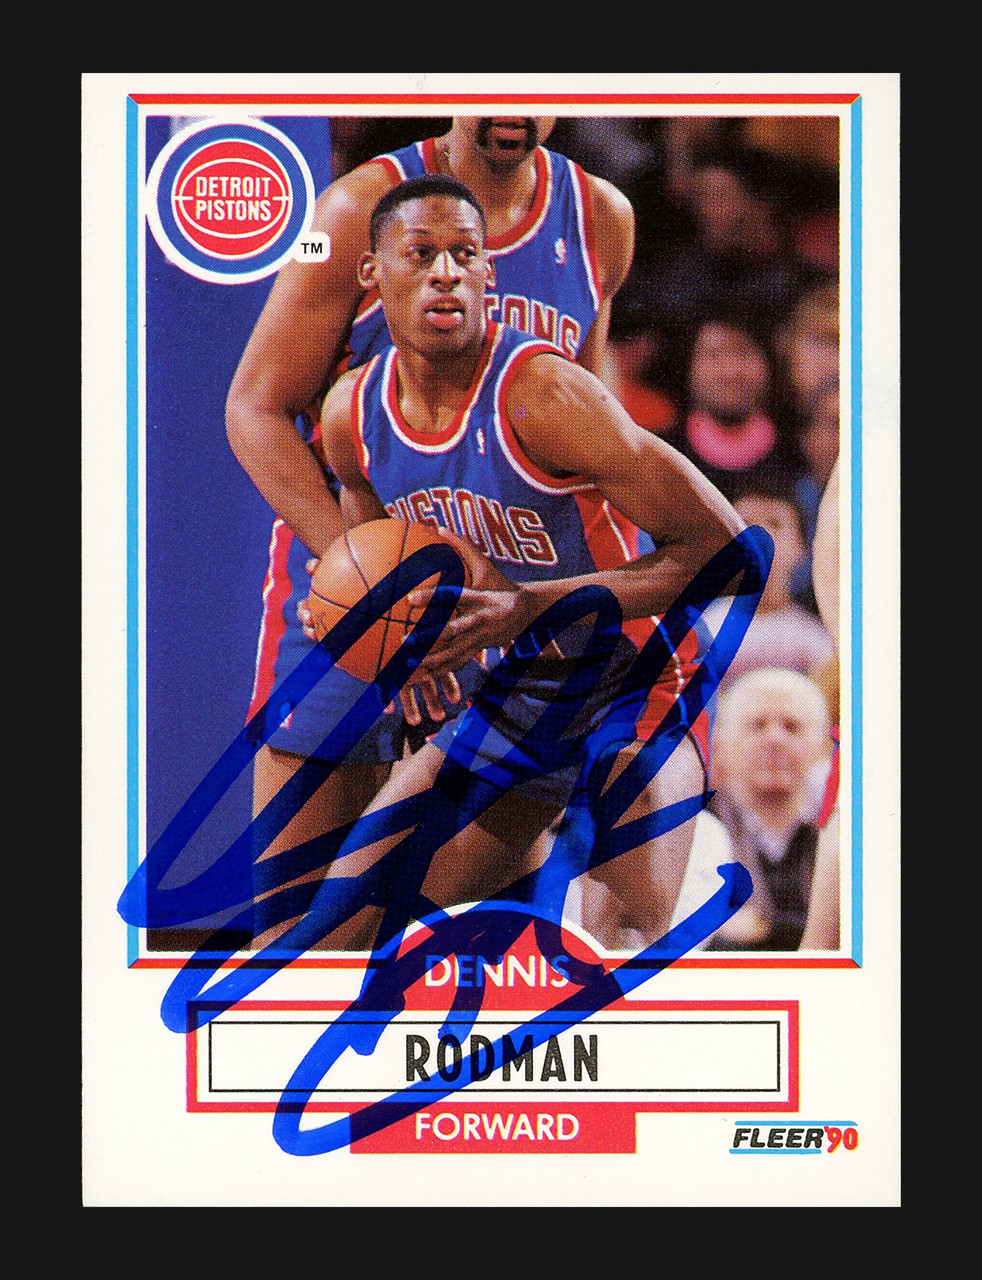  1989-90 Fleer #49 Dennis Rodman Pistons NBA Basketball Card  NM-MT : Collectibles & Fine Art